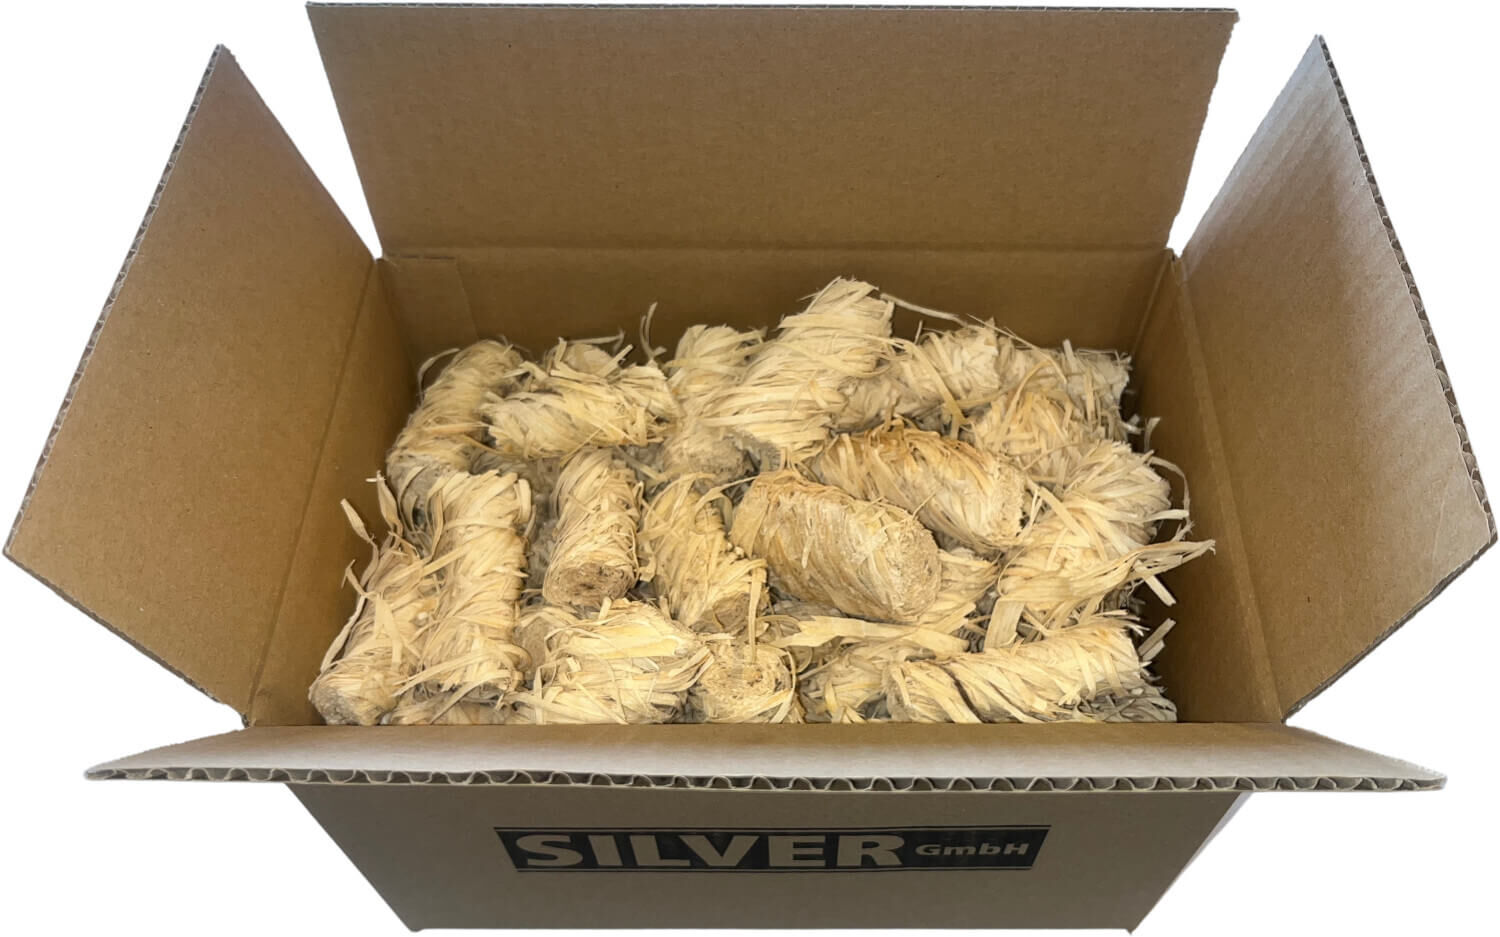 1kg SILVER Bio Holzwolle Anzünder | Grillanzünder - Ofennzünder - Kaminanzünder für Holz & Kohle